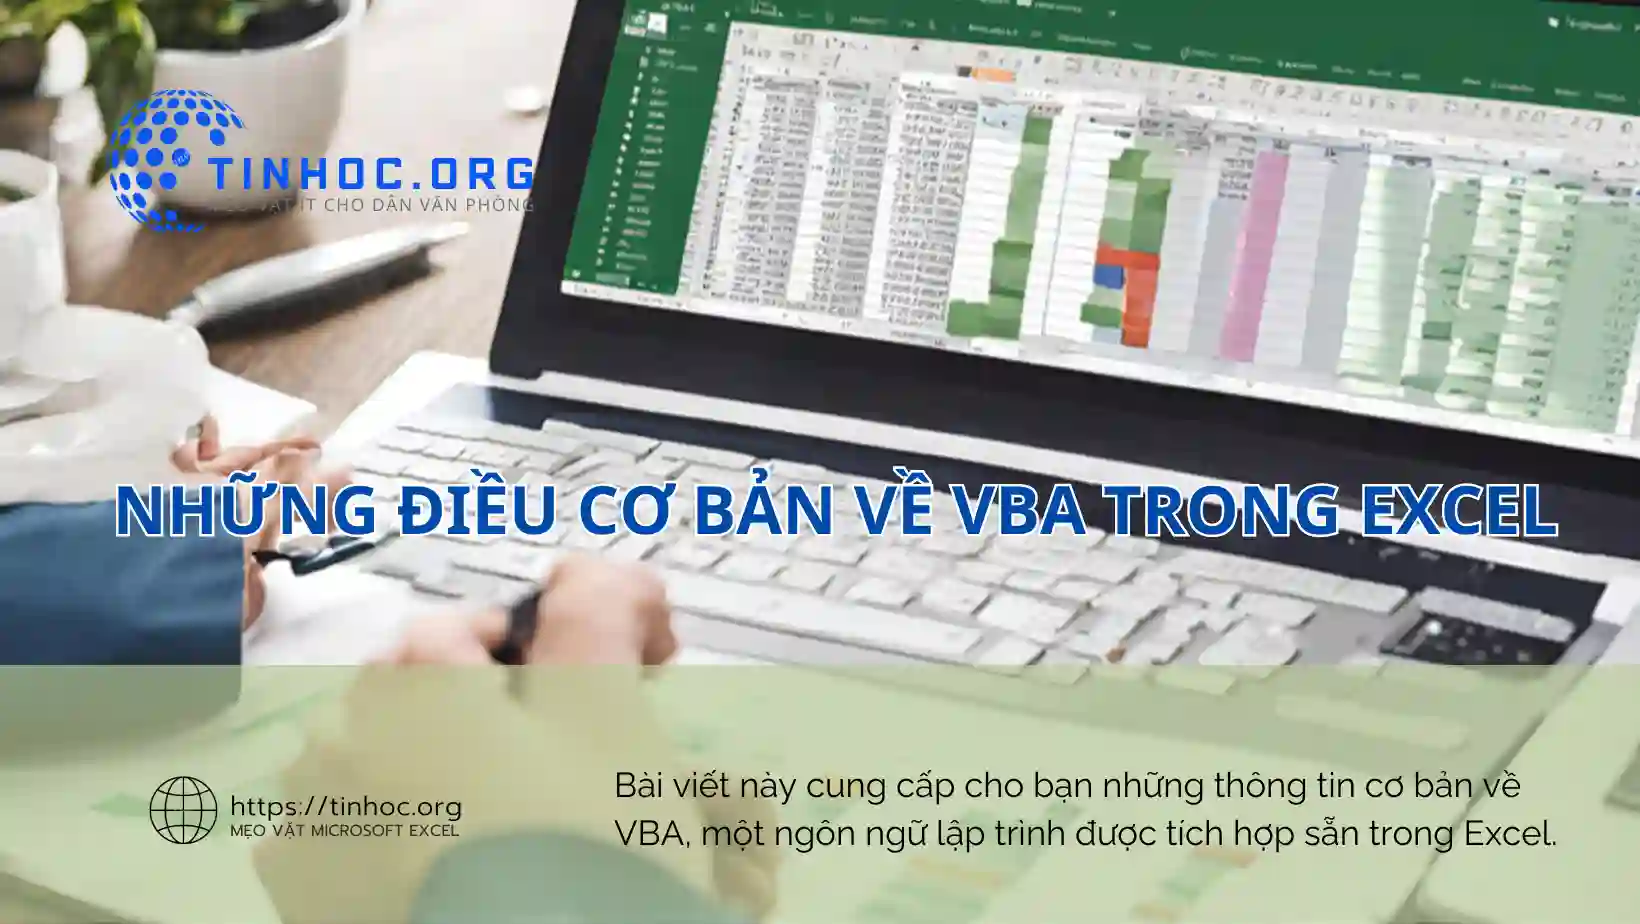 Bài viết này cung cấp cho bạn những thông tin cơ bản về VBA, một ngôn ngữ lập trình được tích hợp sẵn trong Excel.